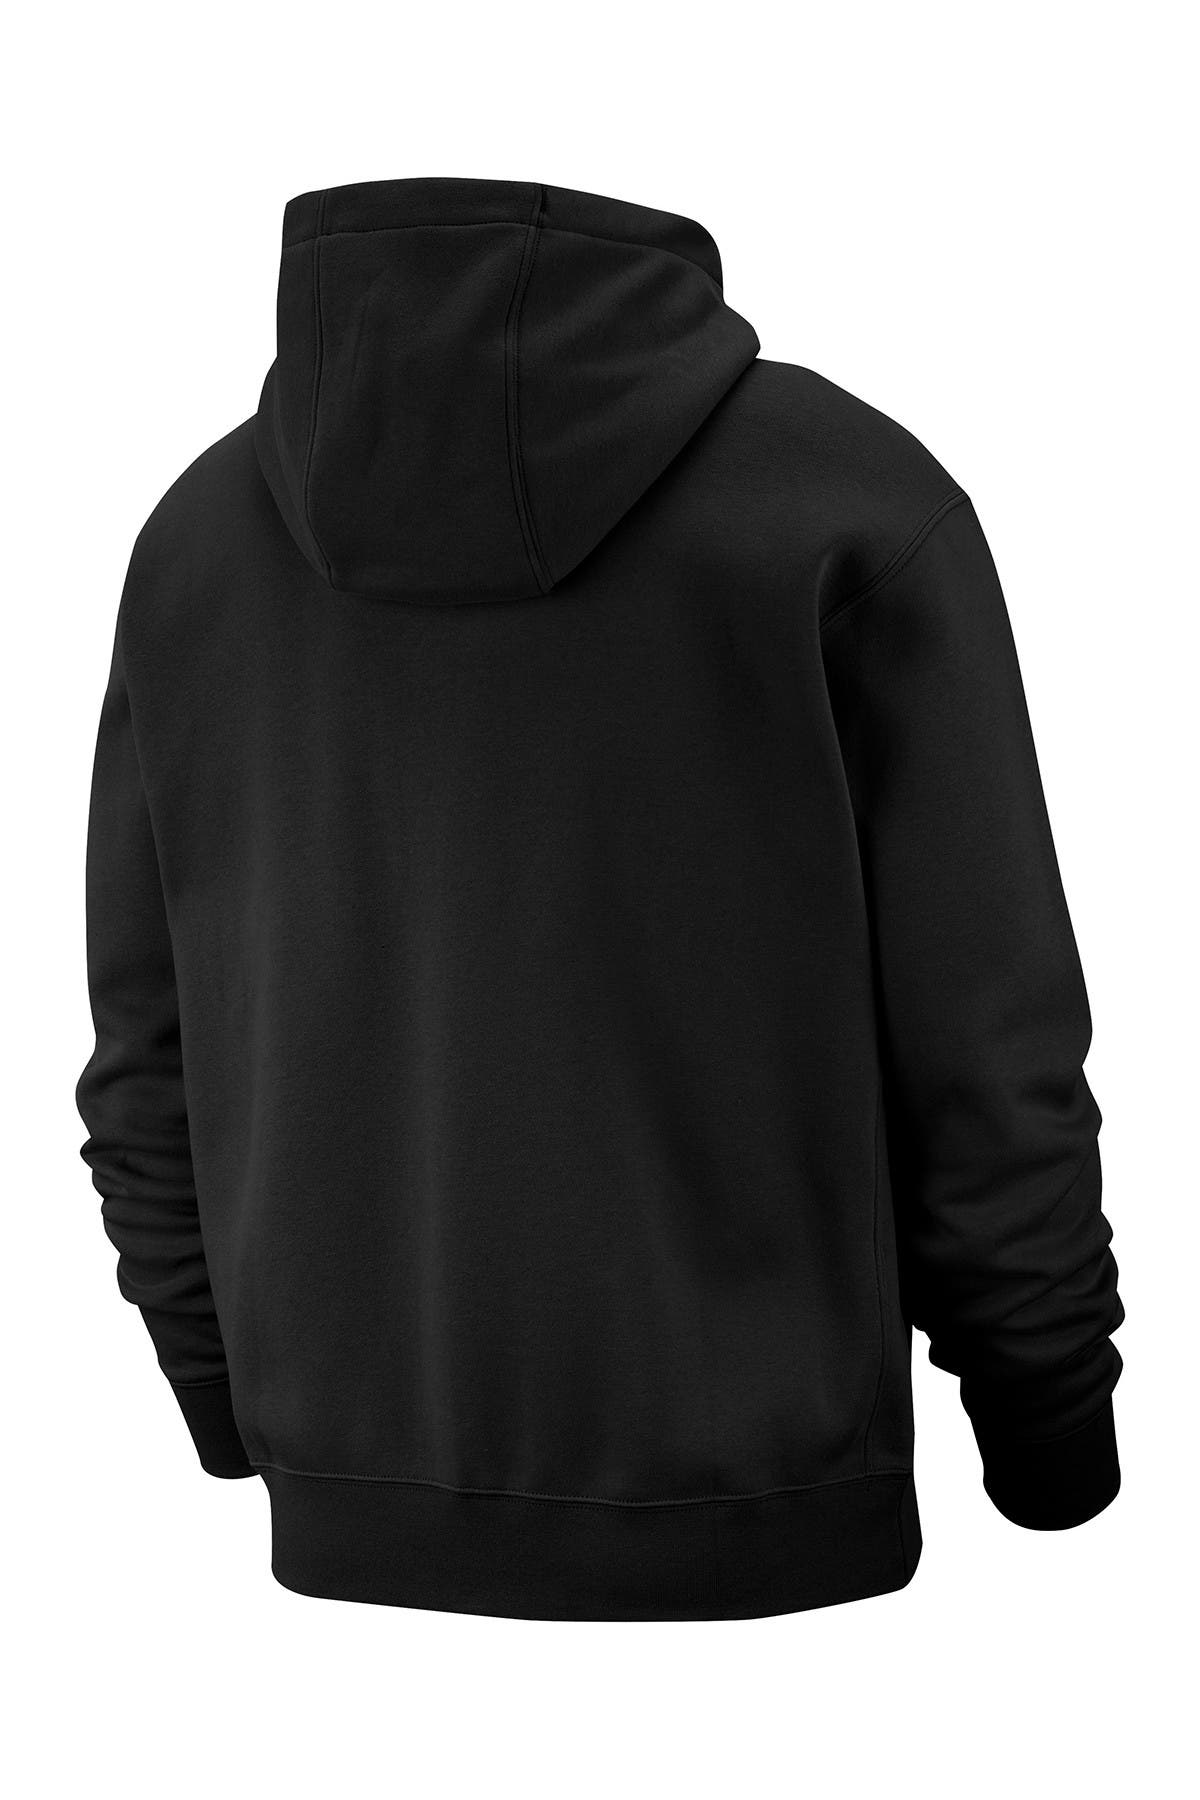 nike hoodie with drawstrings